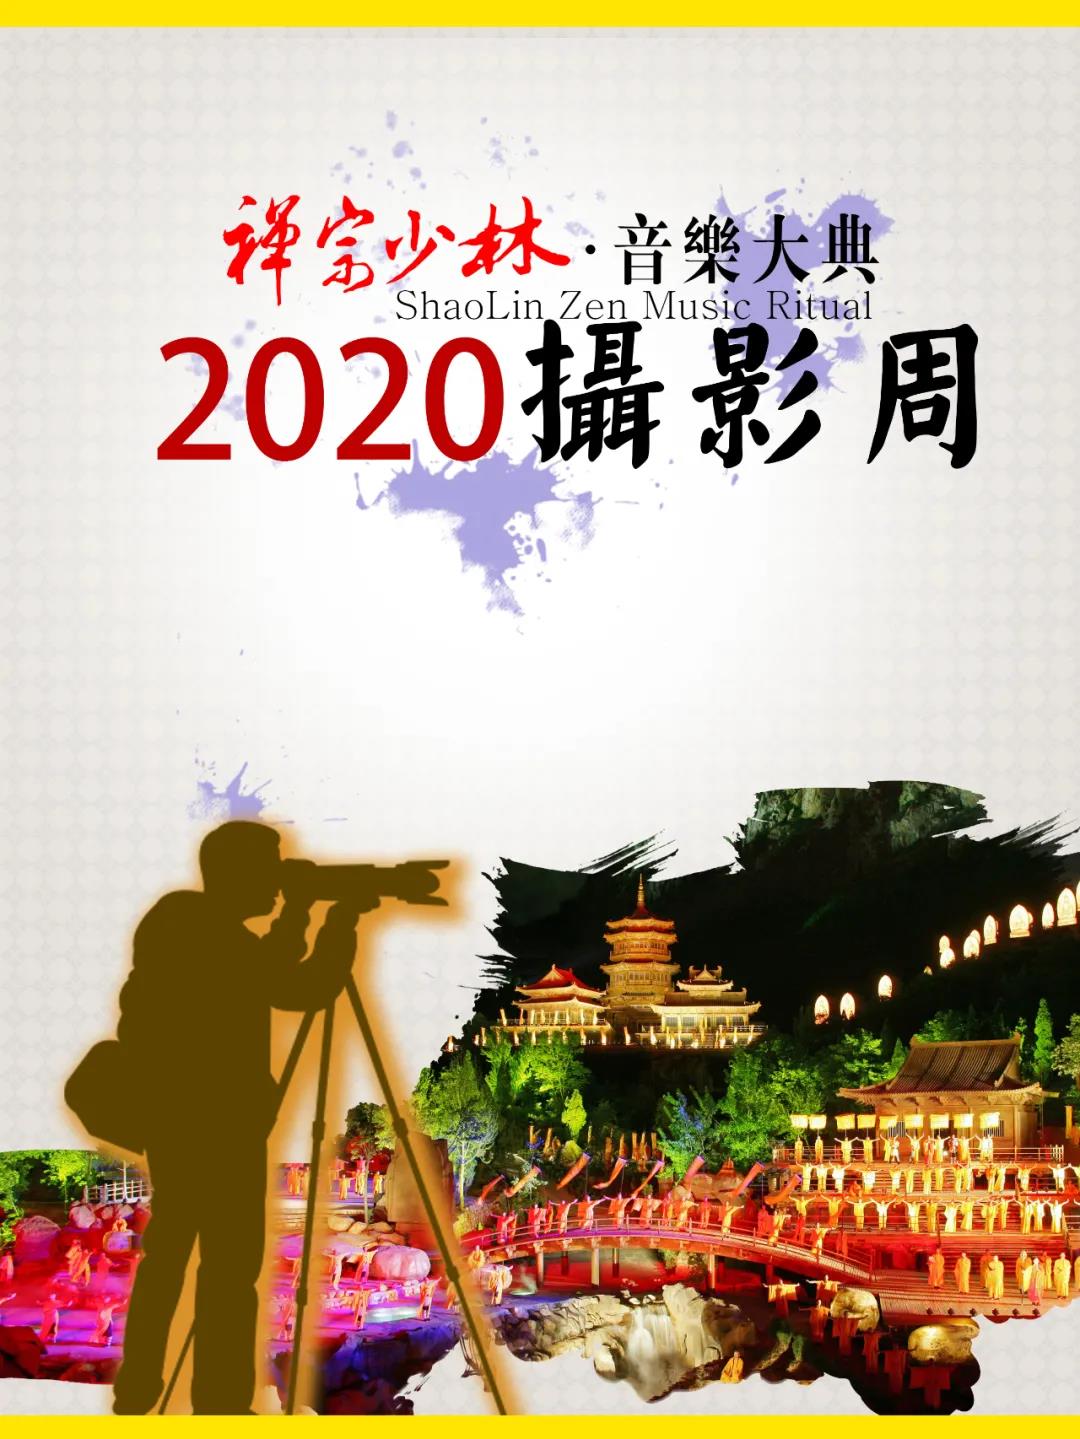 2020年《禅宗少林·音乐大典》摄影周活动开始报名啦！